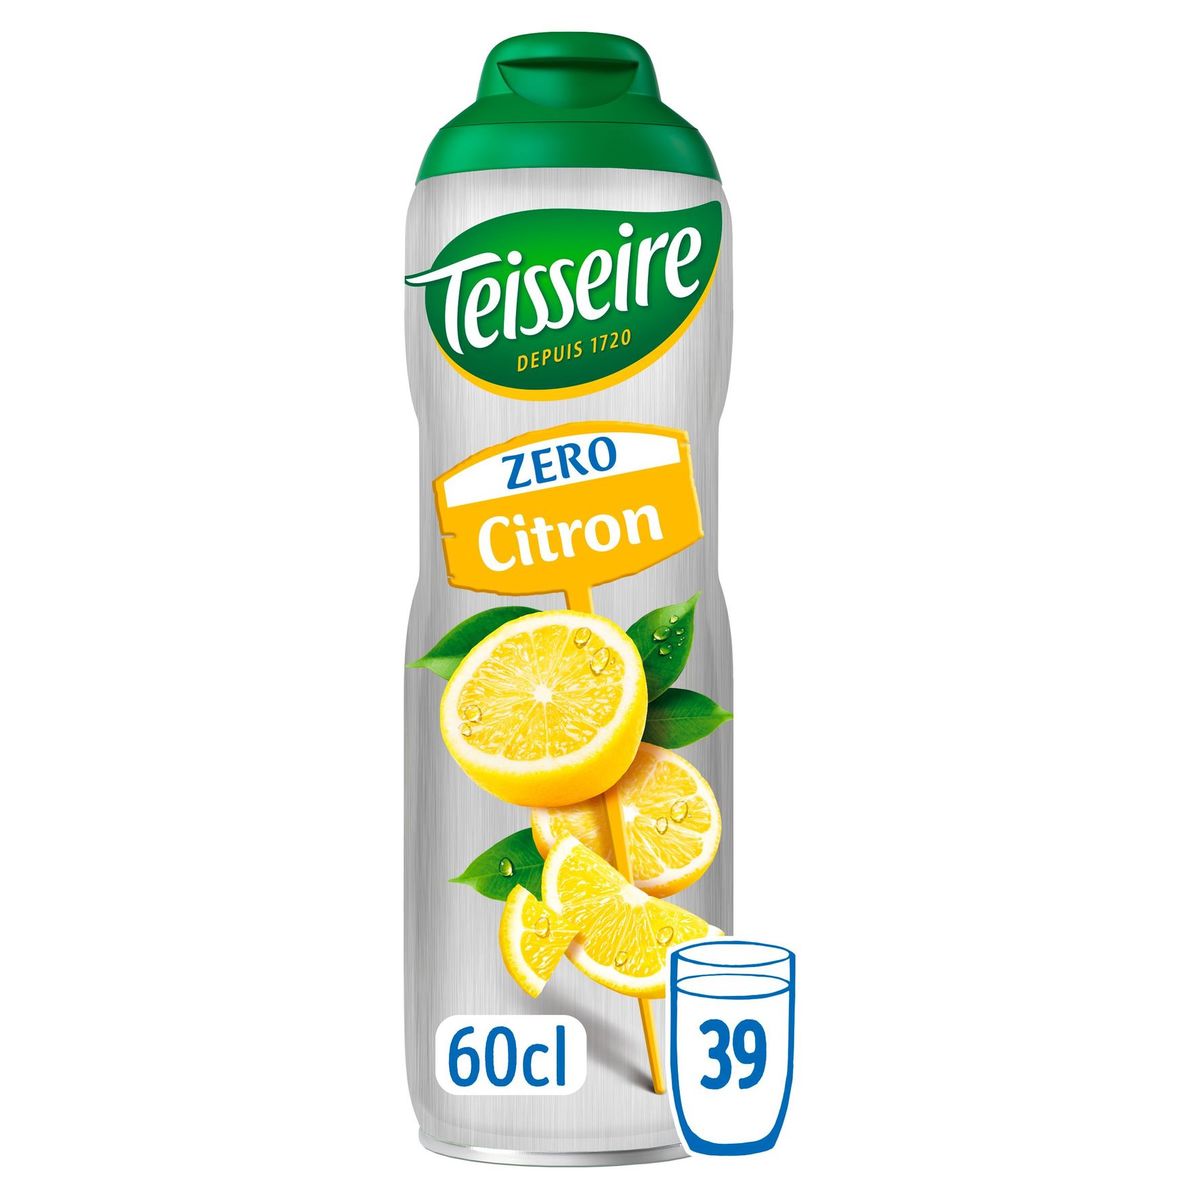 Teisseire Zero Citron 60 cl